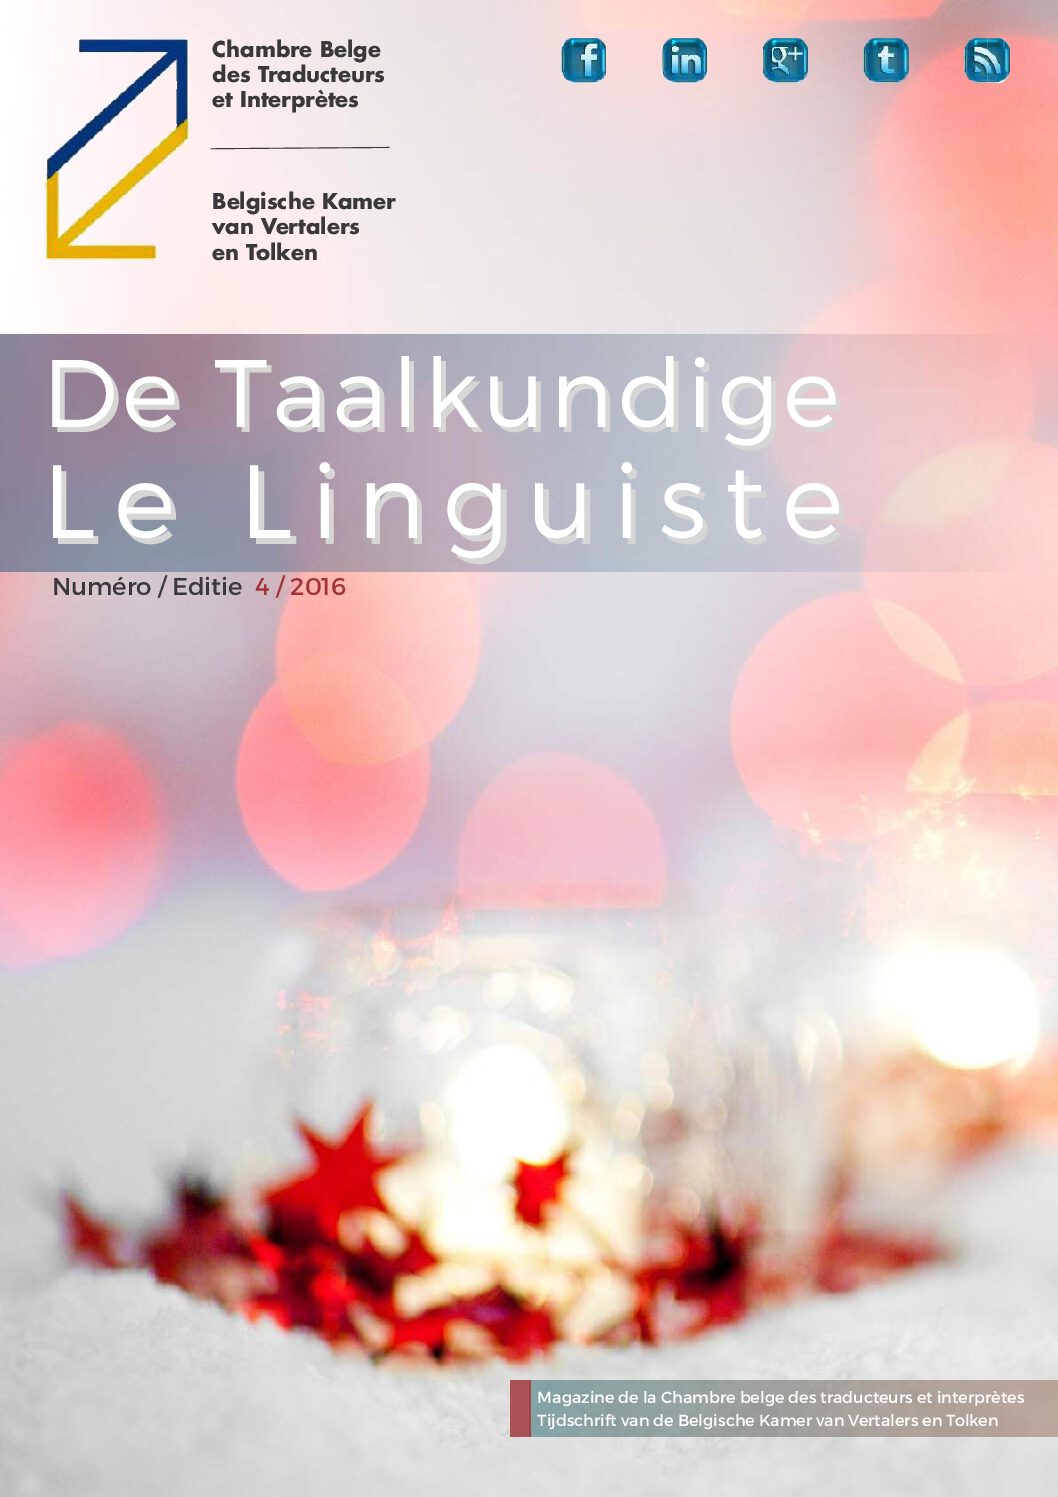 Image de présentation pour le document : De Taalkundige – Le Linguiste 2016 / 4